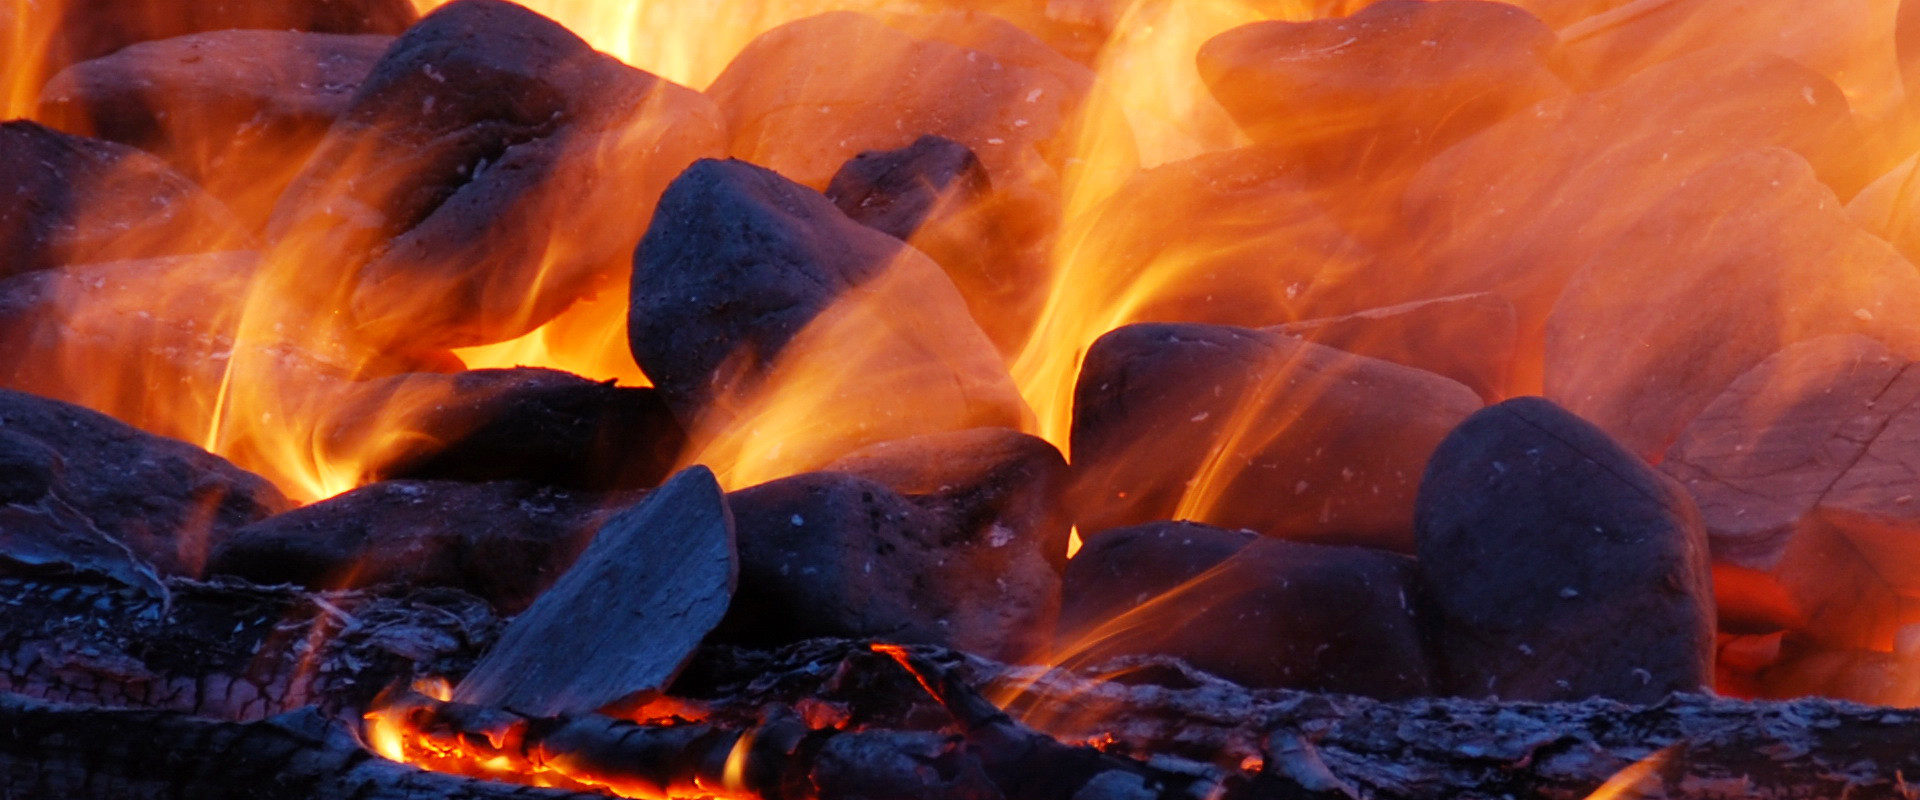 Flammen, Glut und Kohlen die Ur-Elemente des Feuers